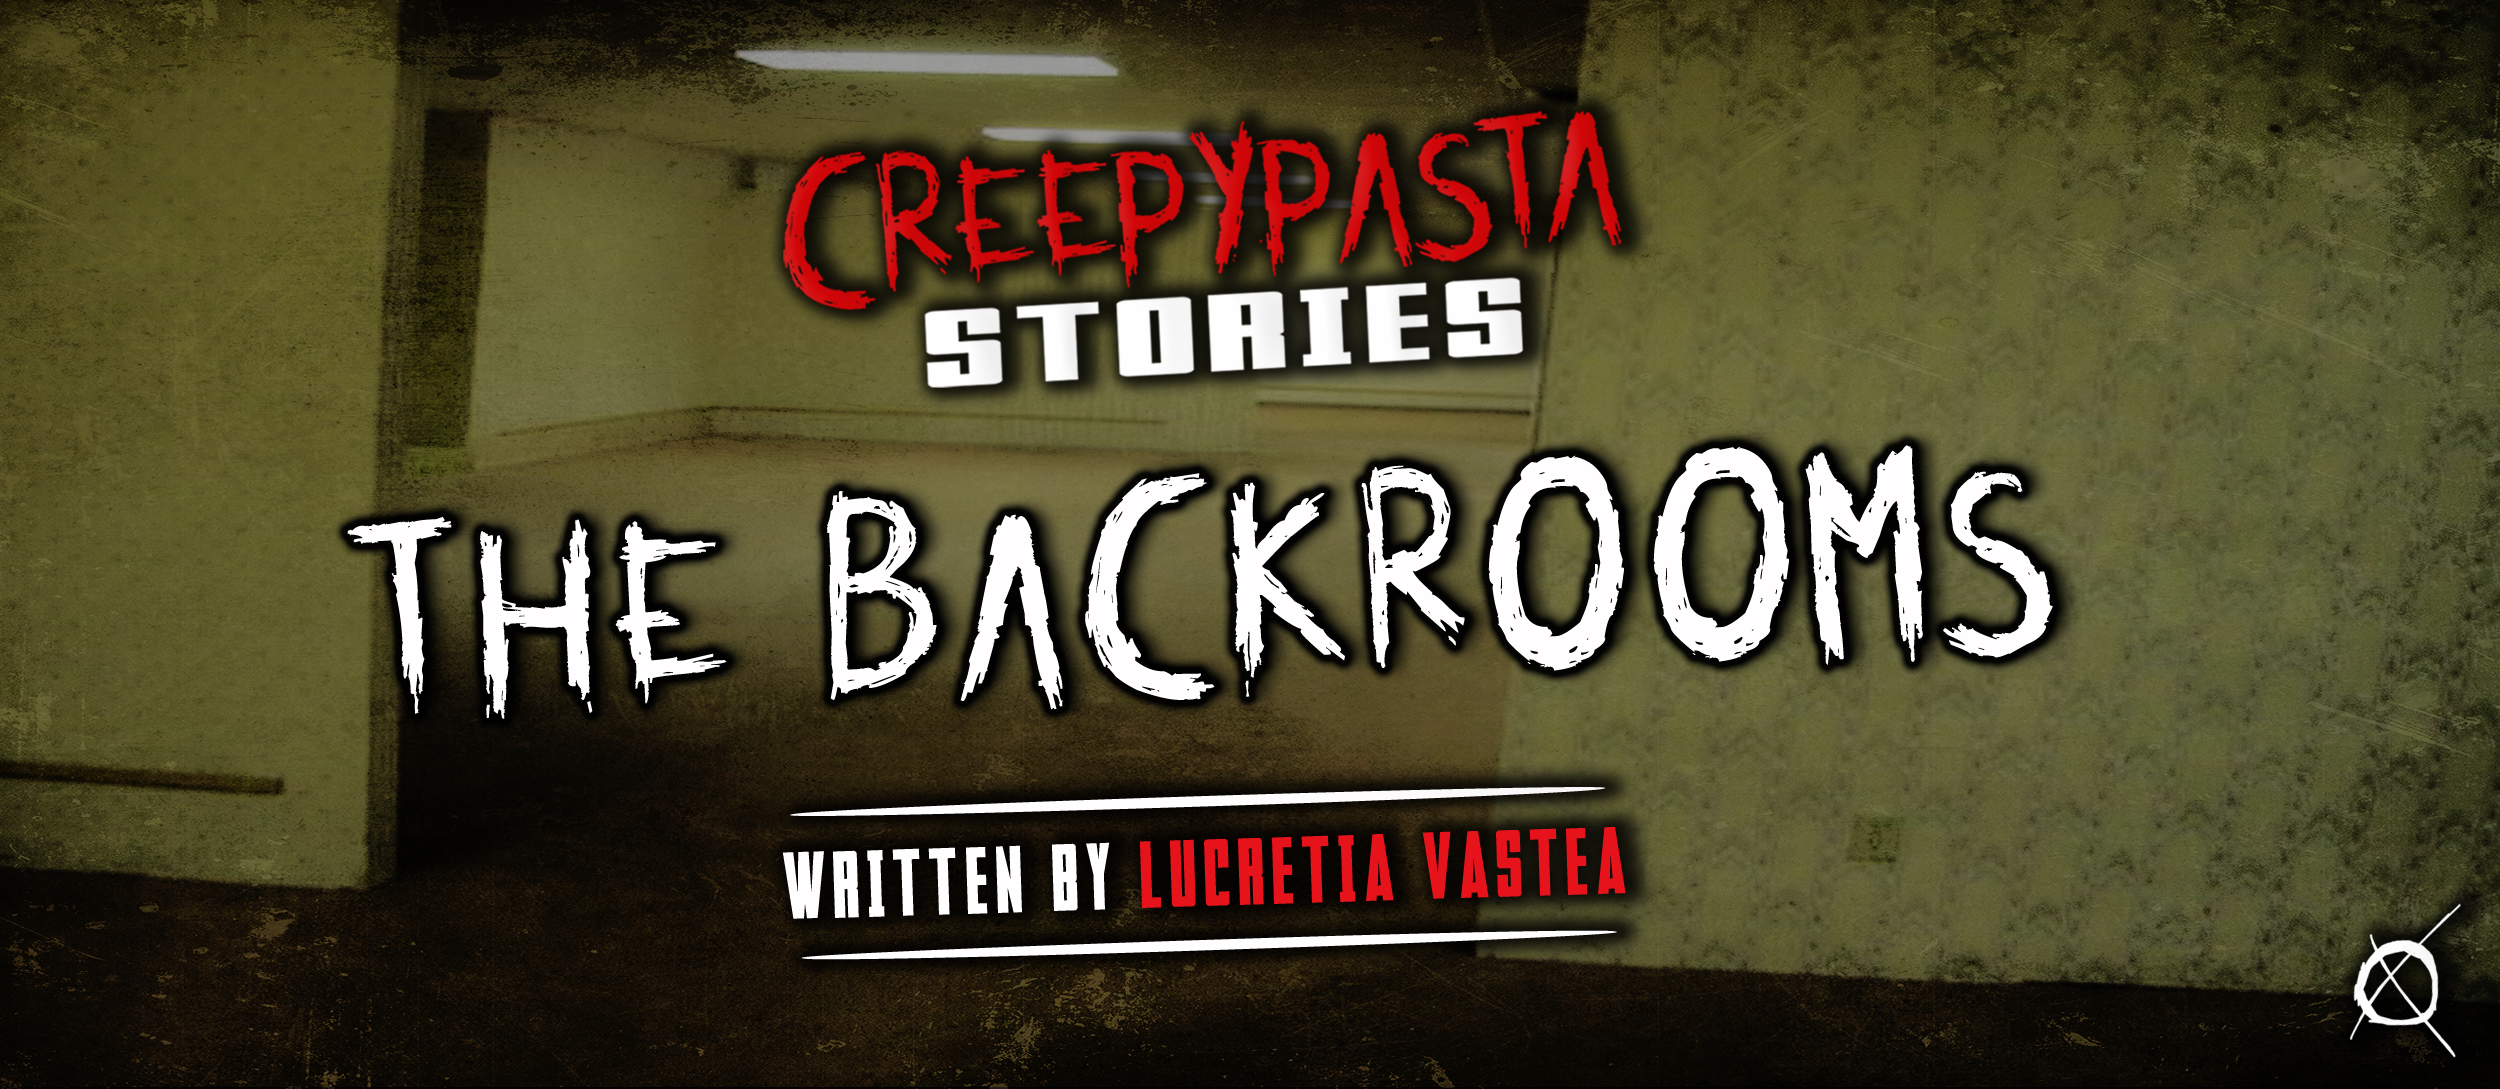 Backrooms - Reddit's Own Horror Story